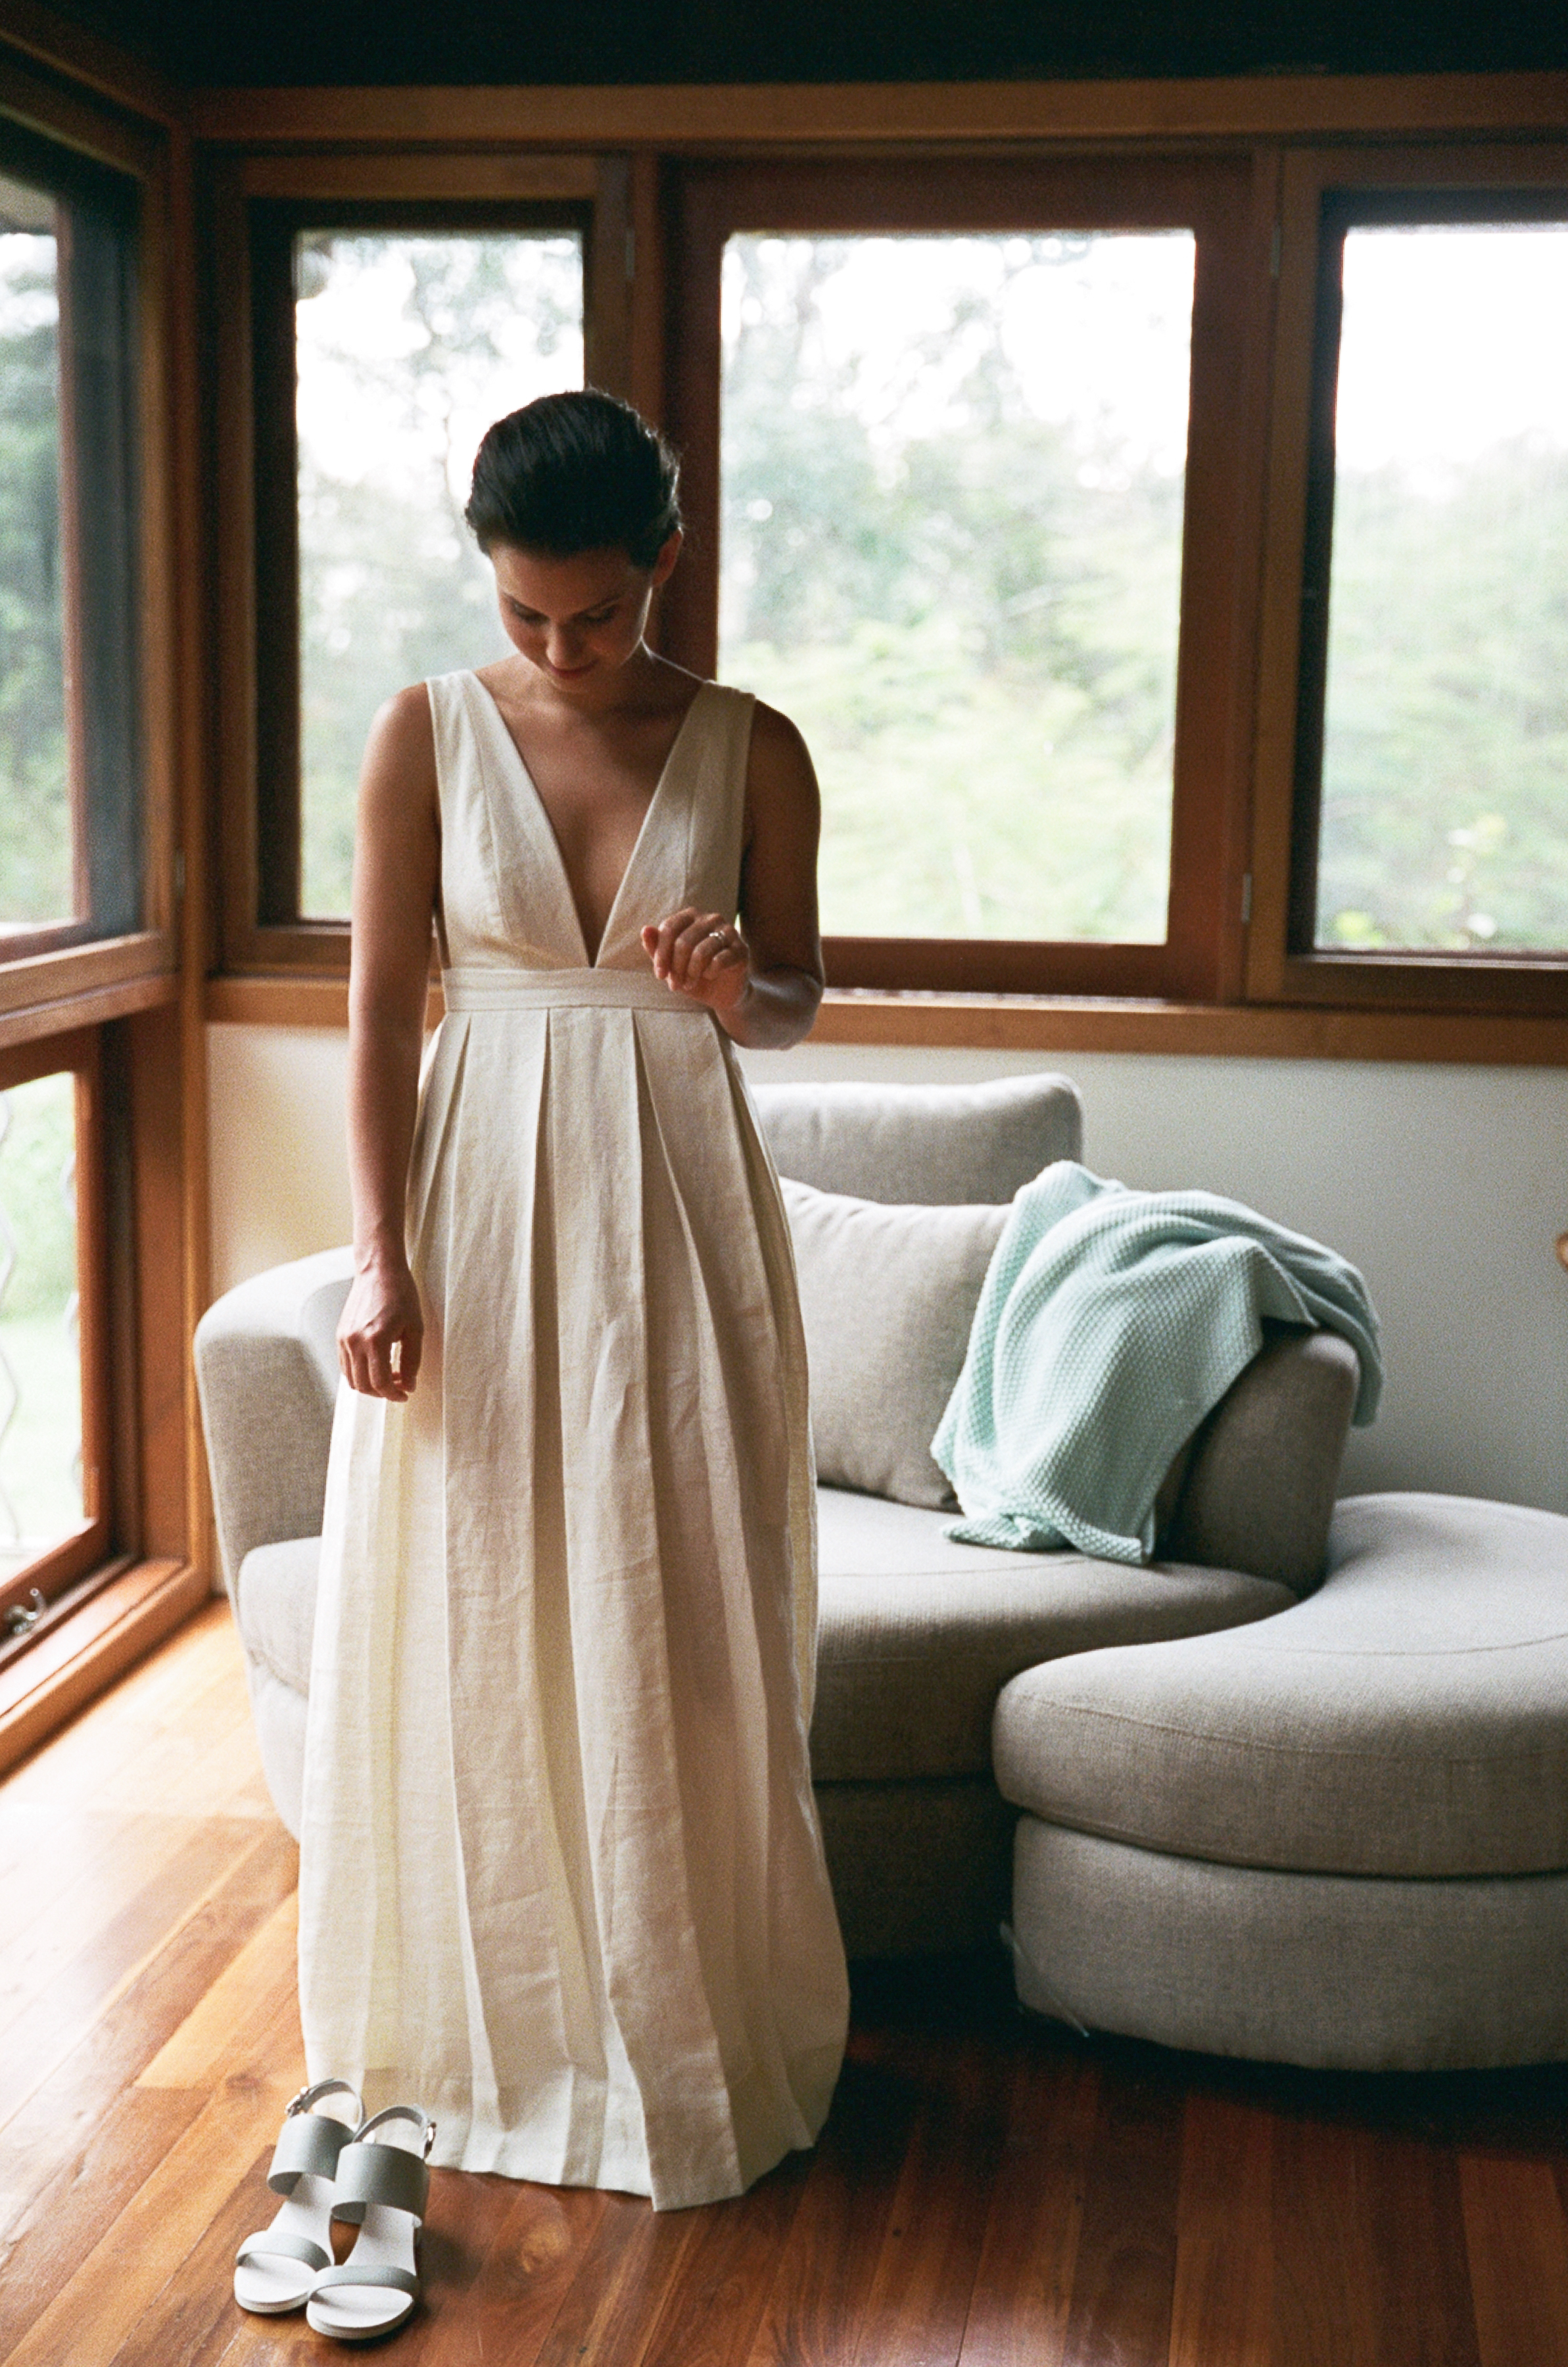 linen bridal dresses